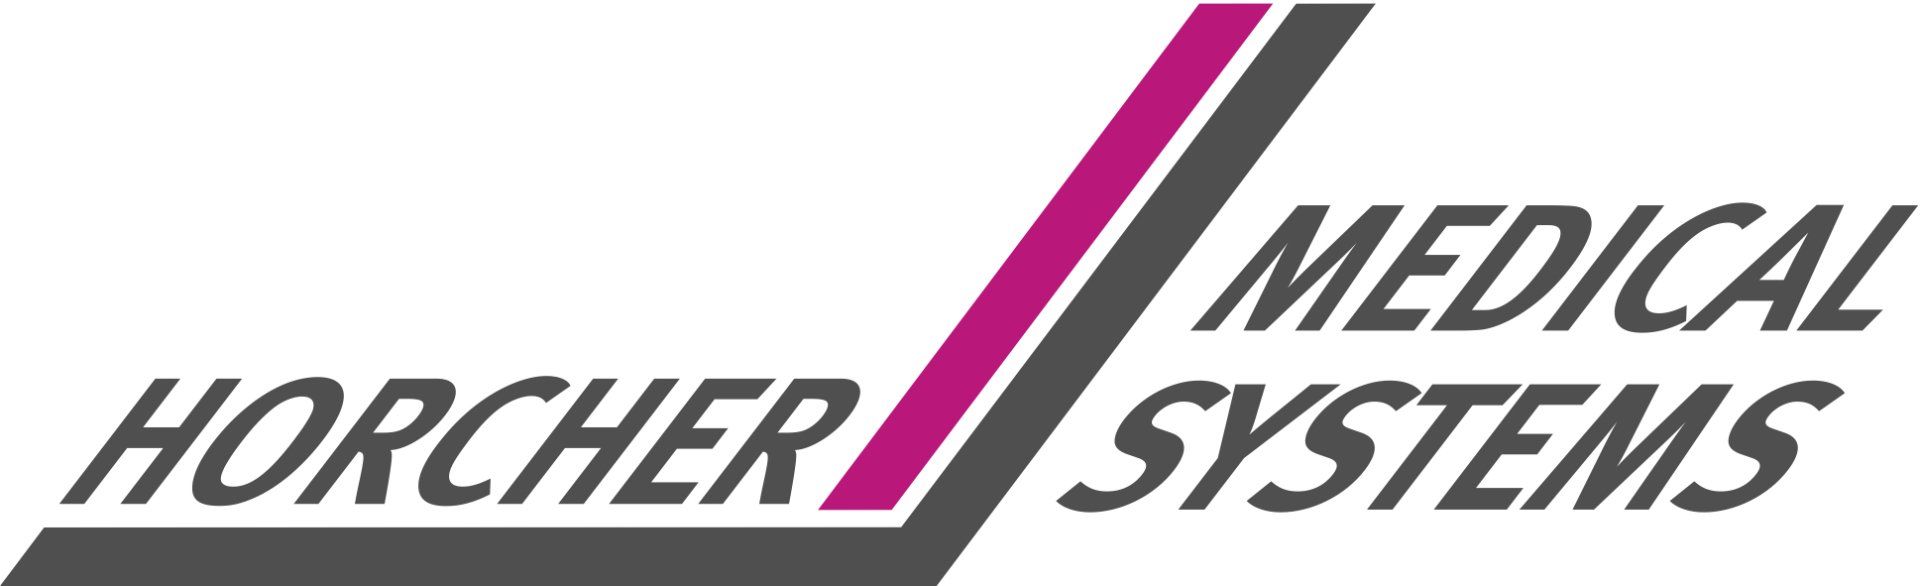 Logo: Horcher Medical Systems